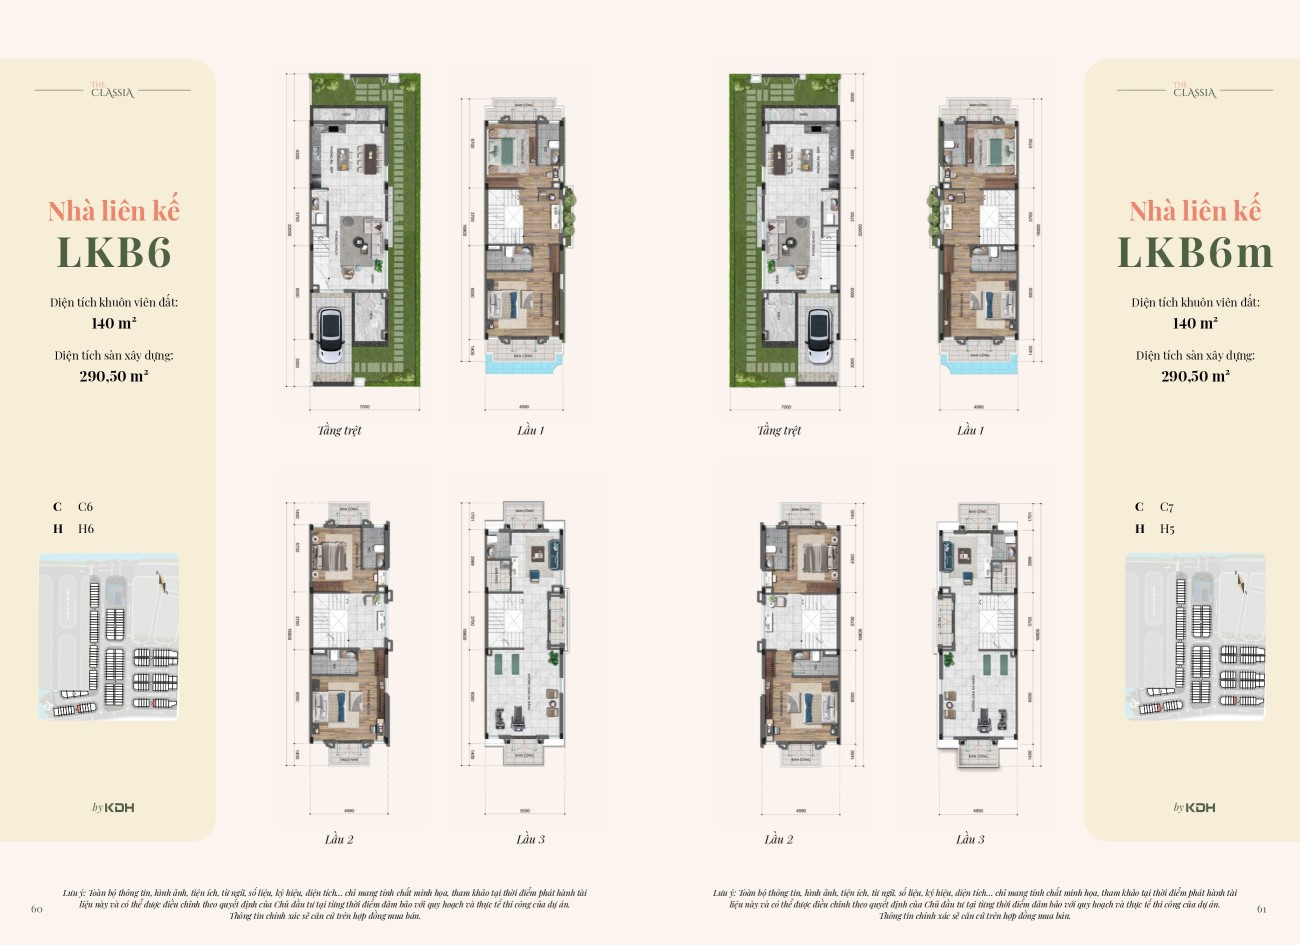 Thiết kế căn 7x20m=140m2 nhà phố Classia Khang Điền Quận 9